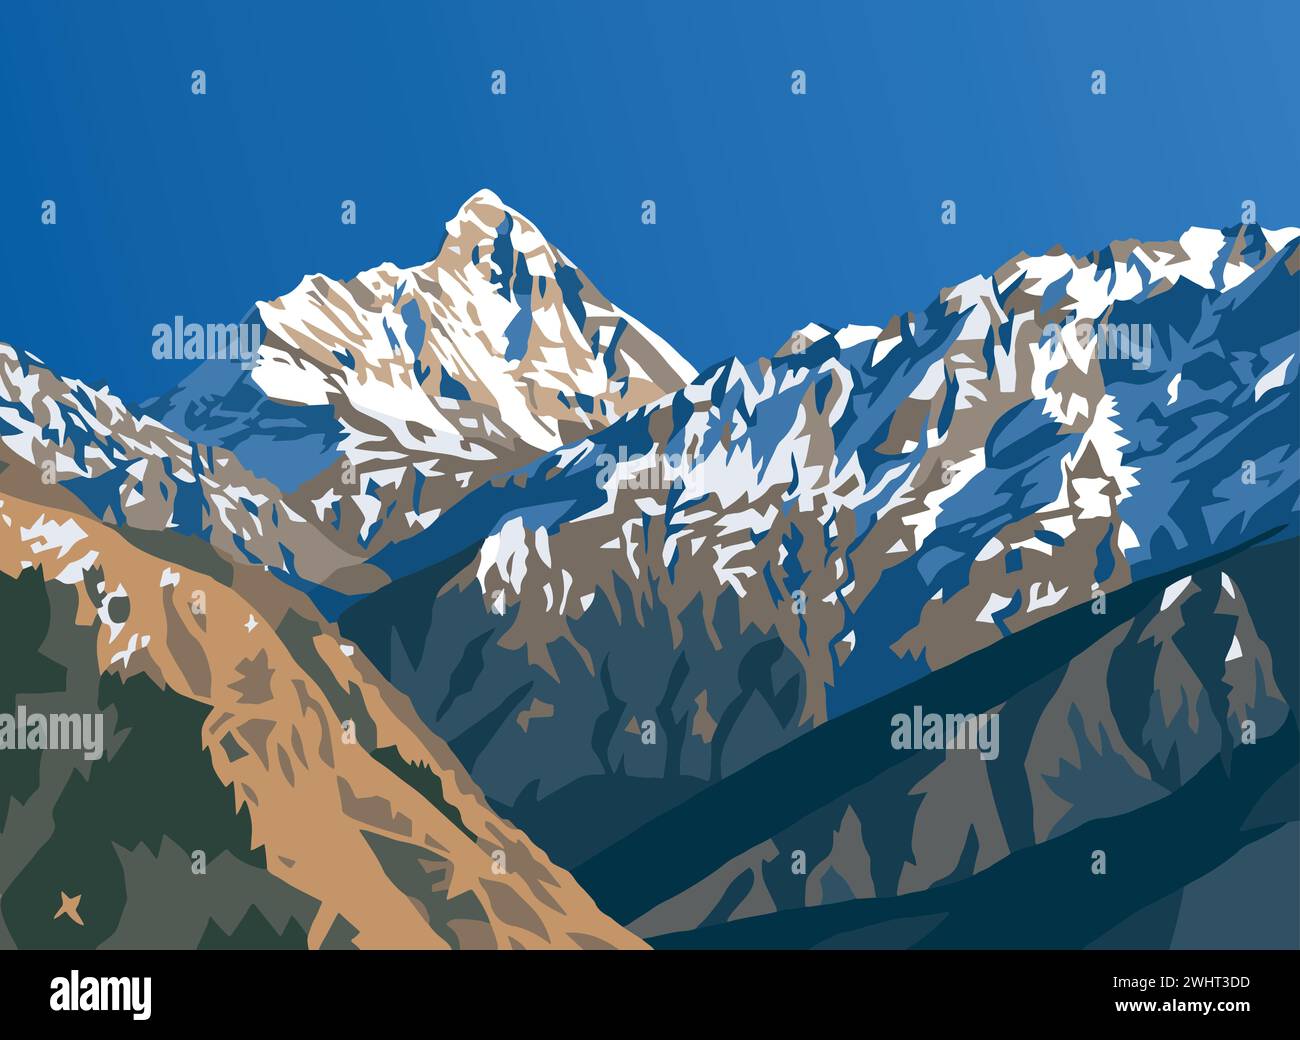 Illustration du vecteur du mont Nanda Devi, l'un des meilleurs monts de l'Himalaya indien, vu de Joshimath Auli, Uttarakhand, Inde, Himalaya indien mounta Illustration de Vecteur